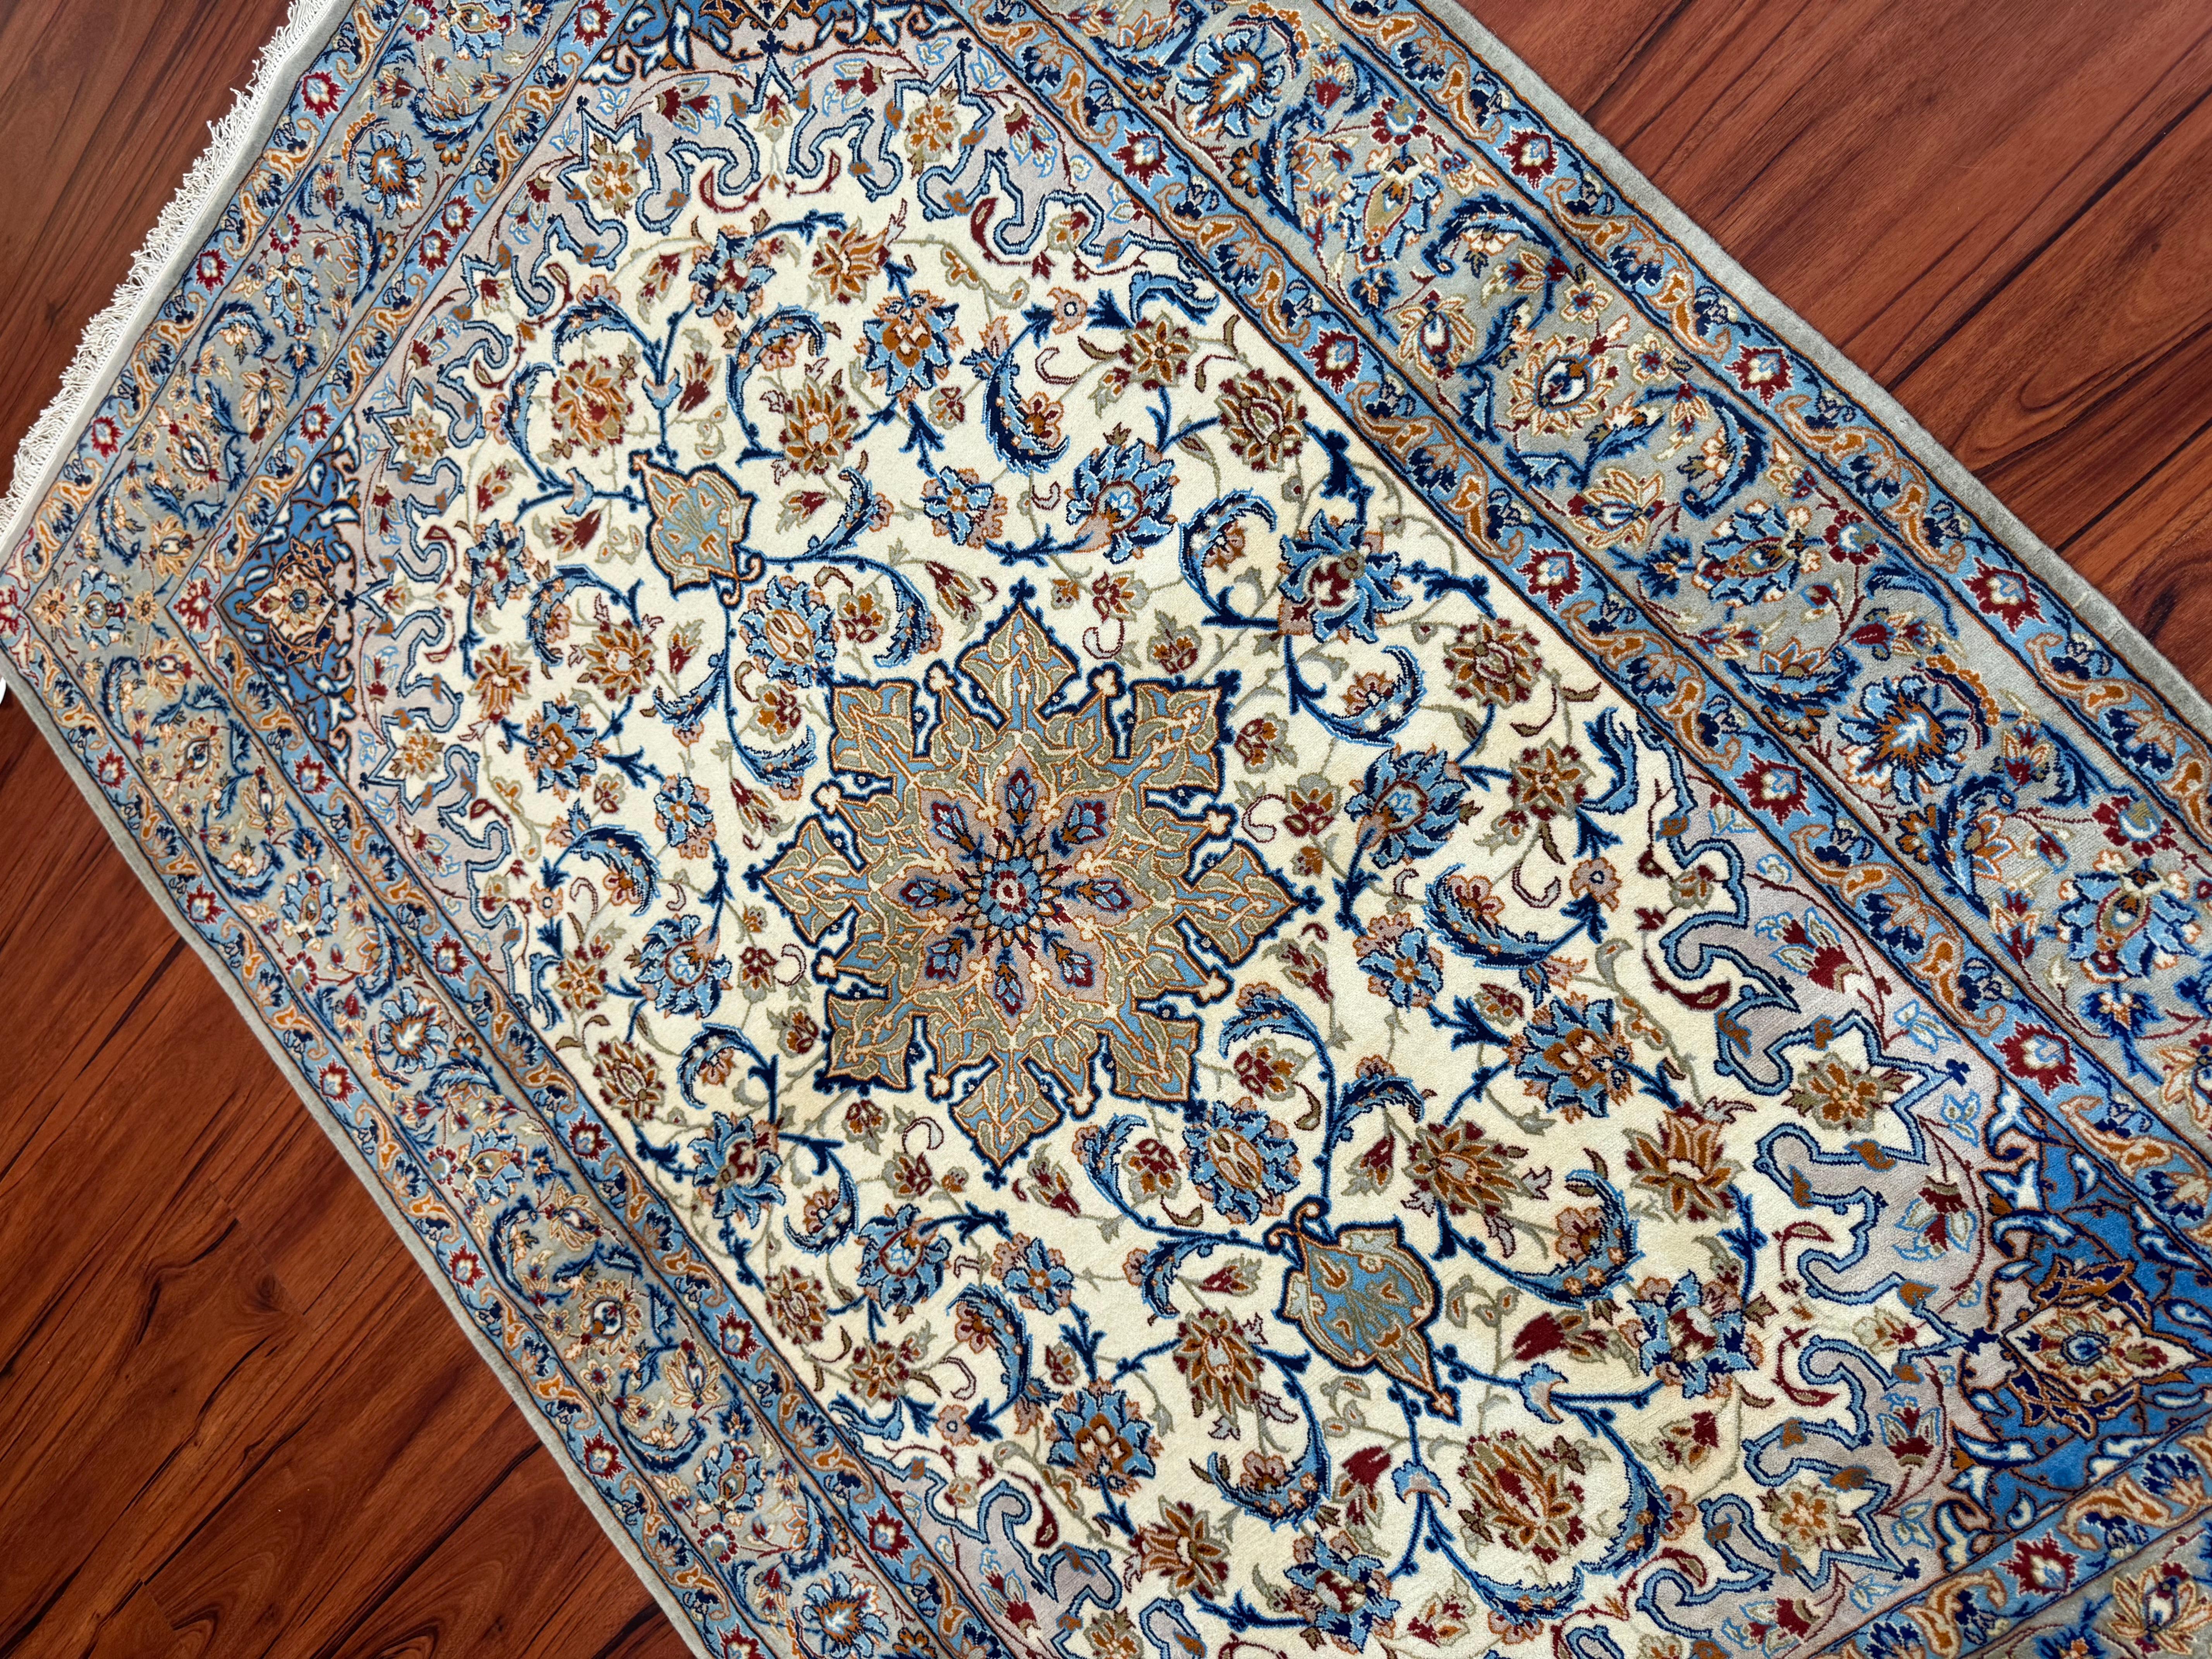 Un superbe tapis persan Isfahan originaire d'Iran au milieu du 20e siècle. Ce tapis est en excellent état et est fait de soie et de laine ! Il est doté d'un superbe design assorti aux magnifiques couleurs du tapis, ce qui rend ce dernier vraiment